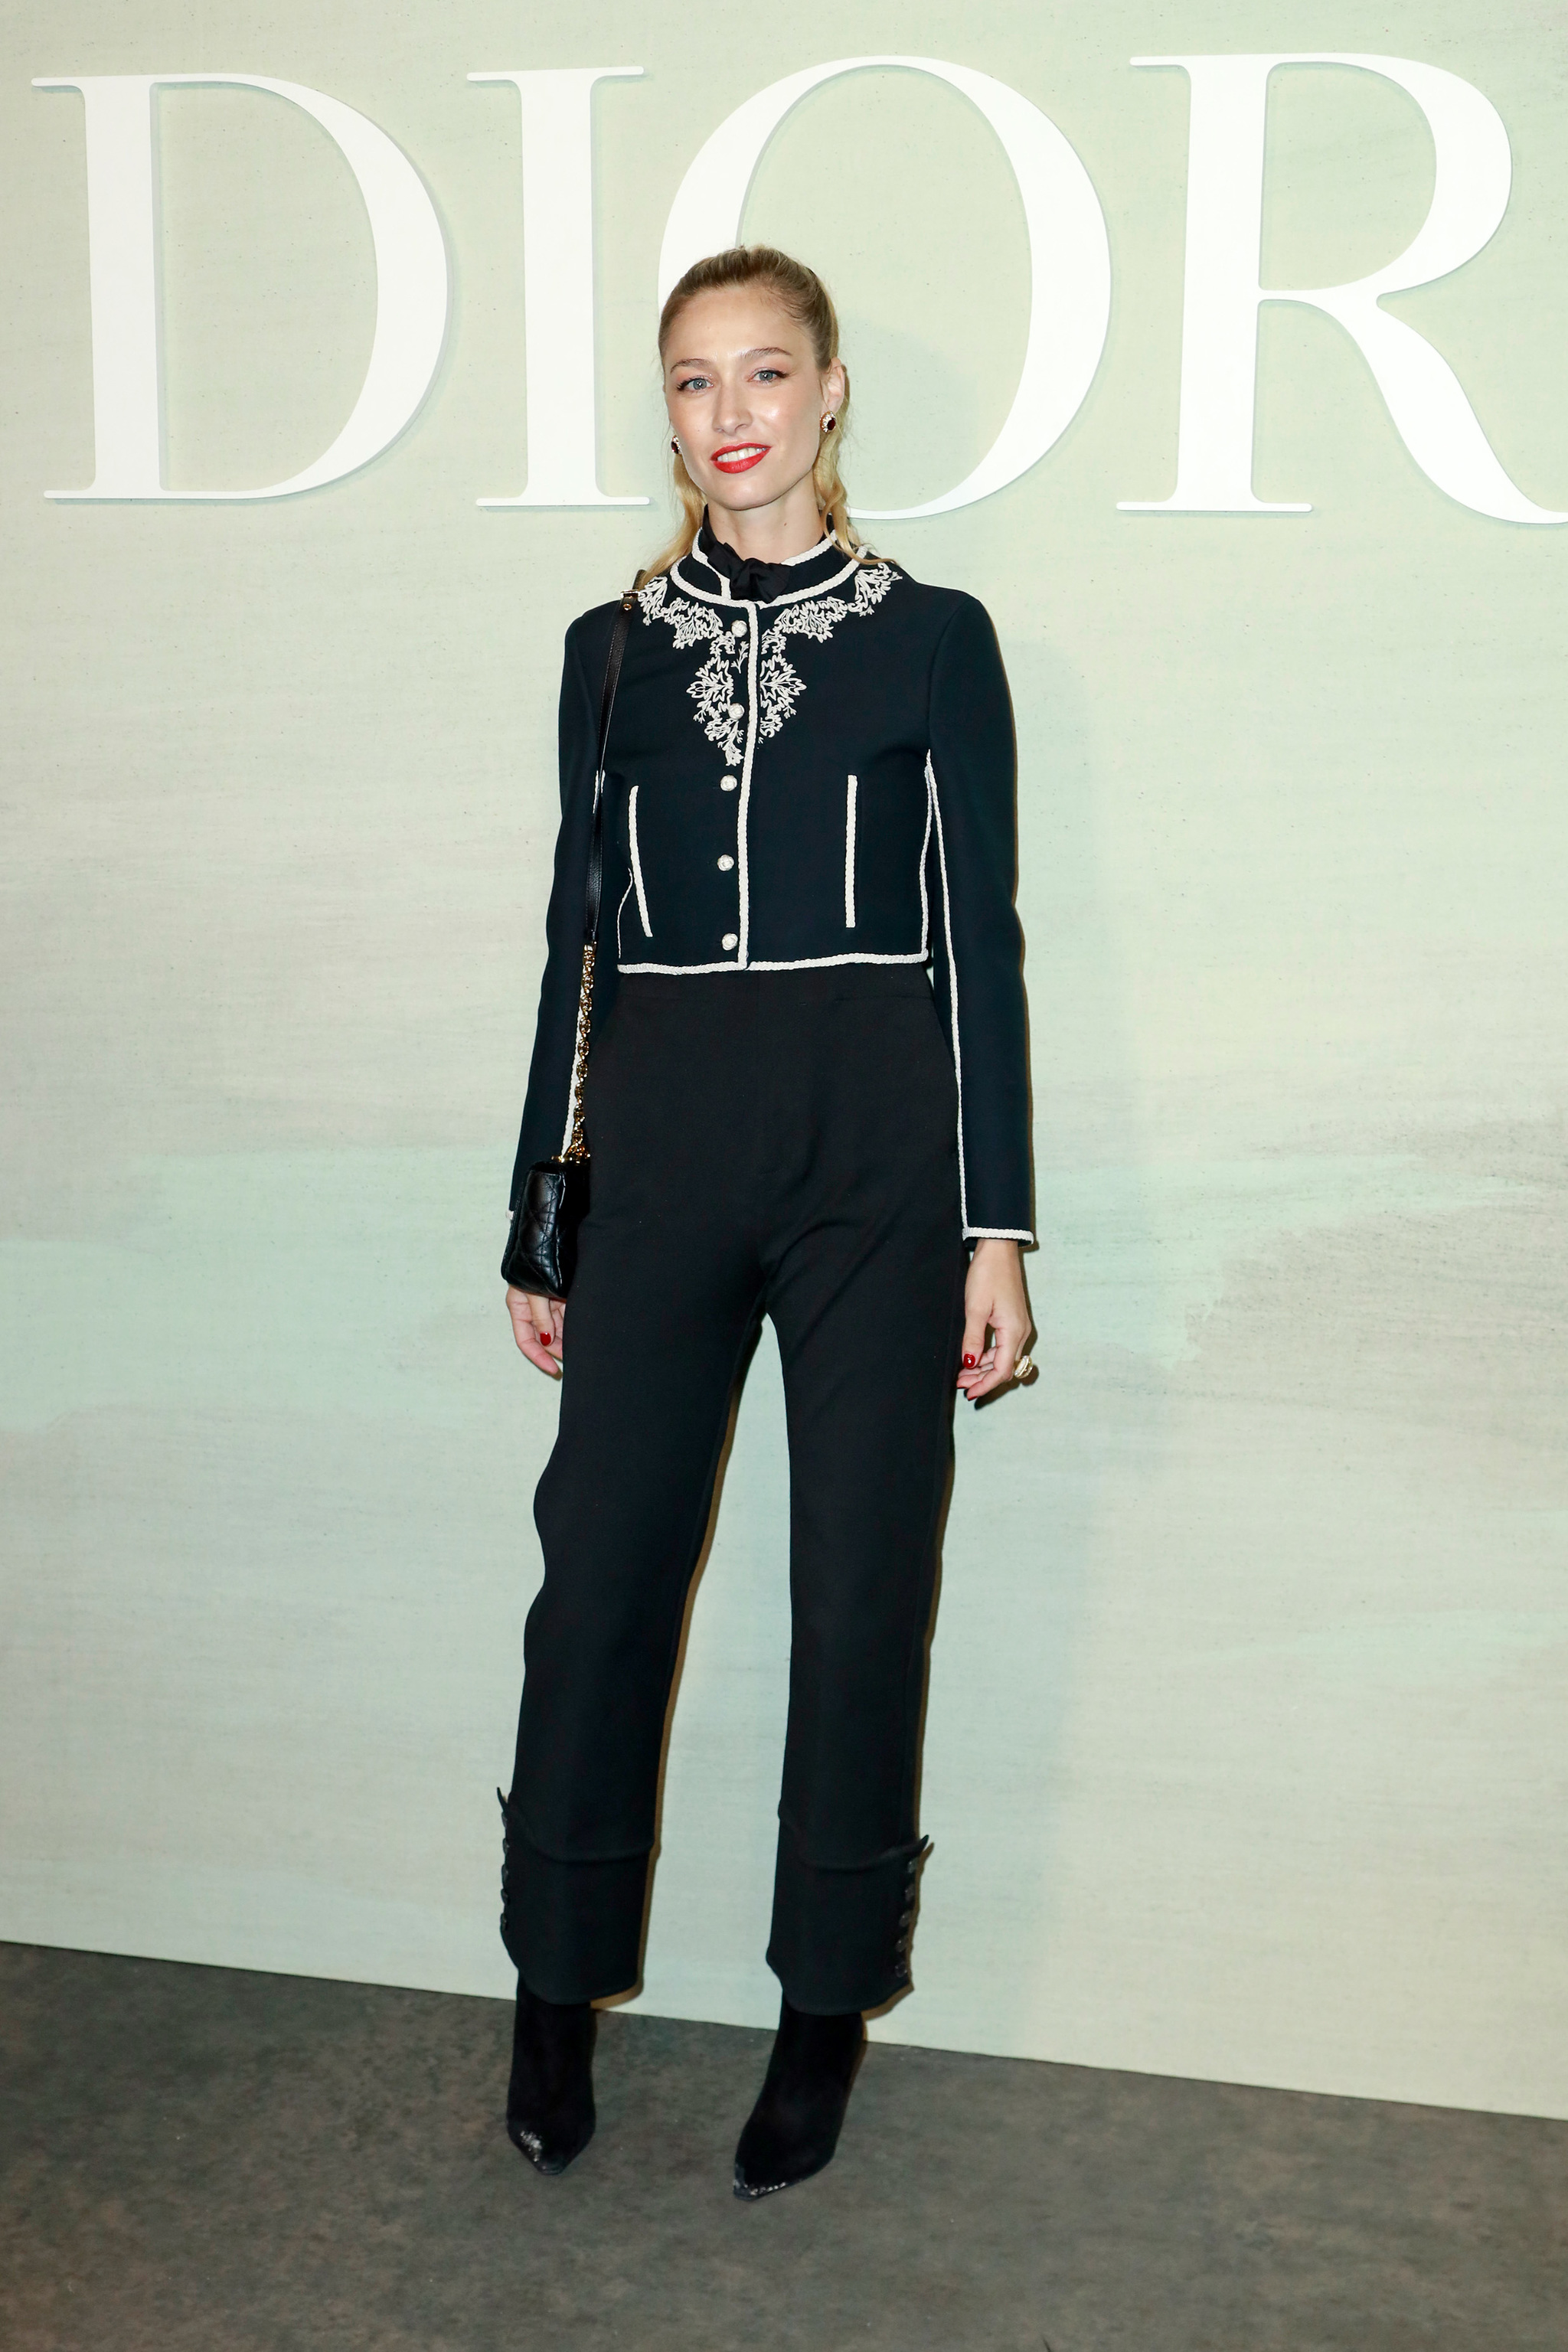 Beatrice Borromeo con look de Dior.